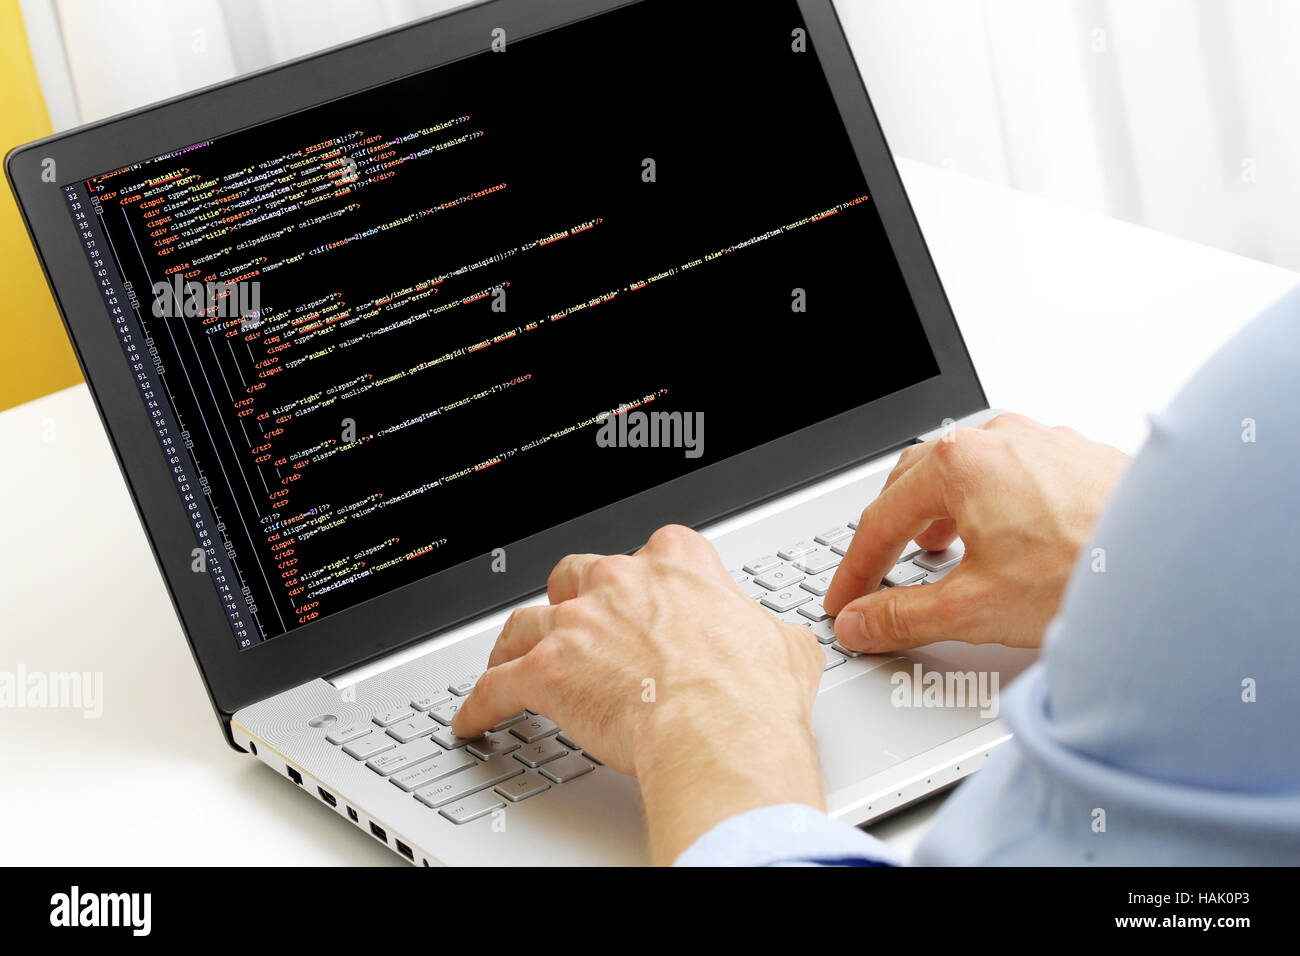 Profession programmateur - homme écrit les codes de programmation sur ordinateur portable Banque D'Images